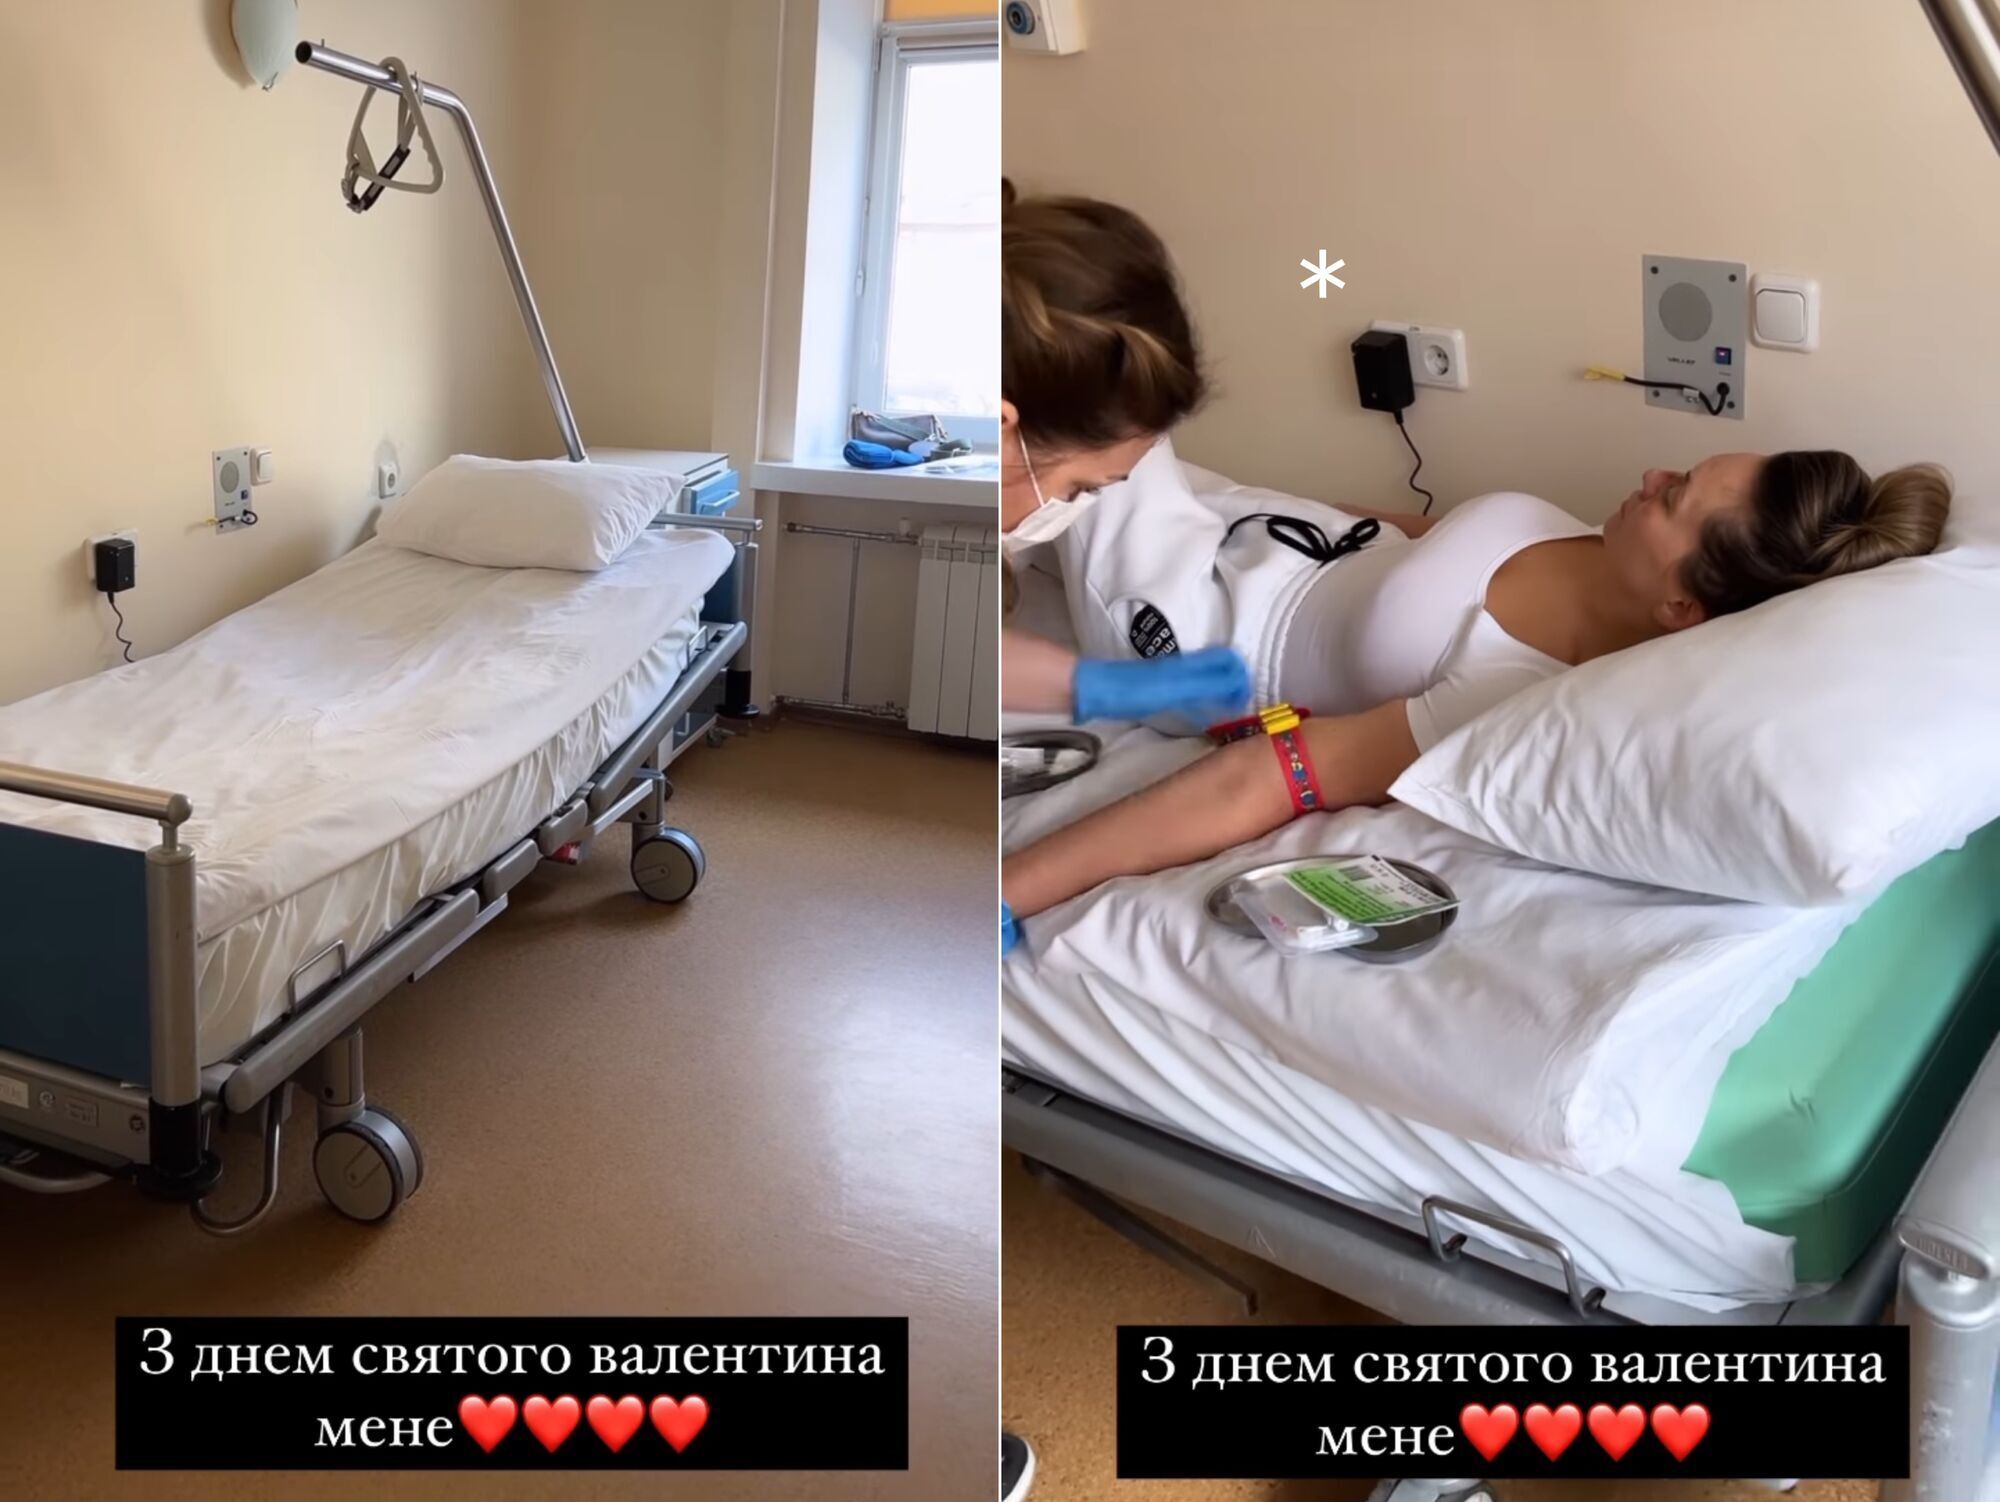 Саливанчук, которая серьезно травмировала лицо и голову, готовится к операции: буду плакать, если буду говорить об этом